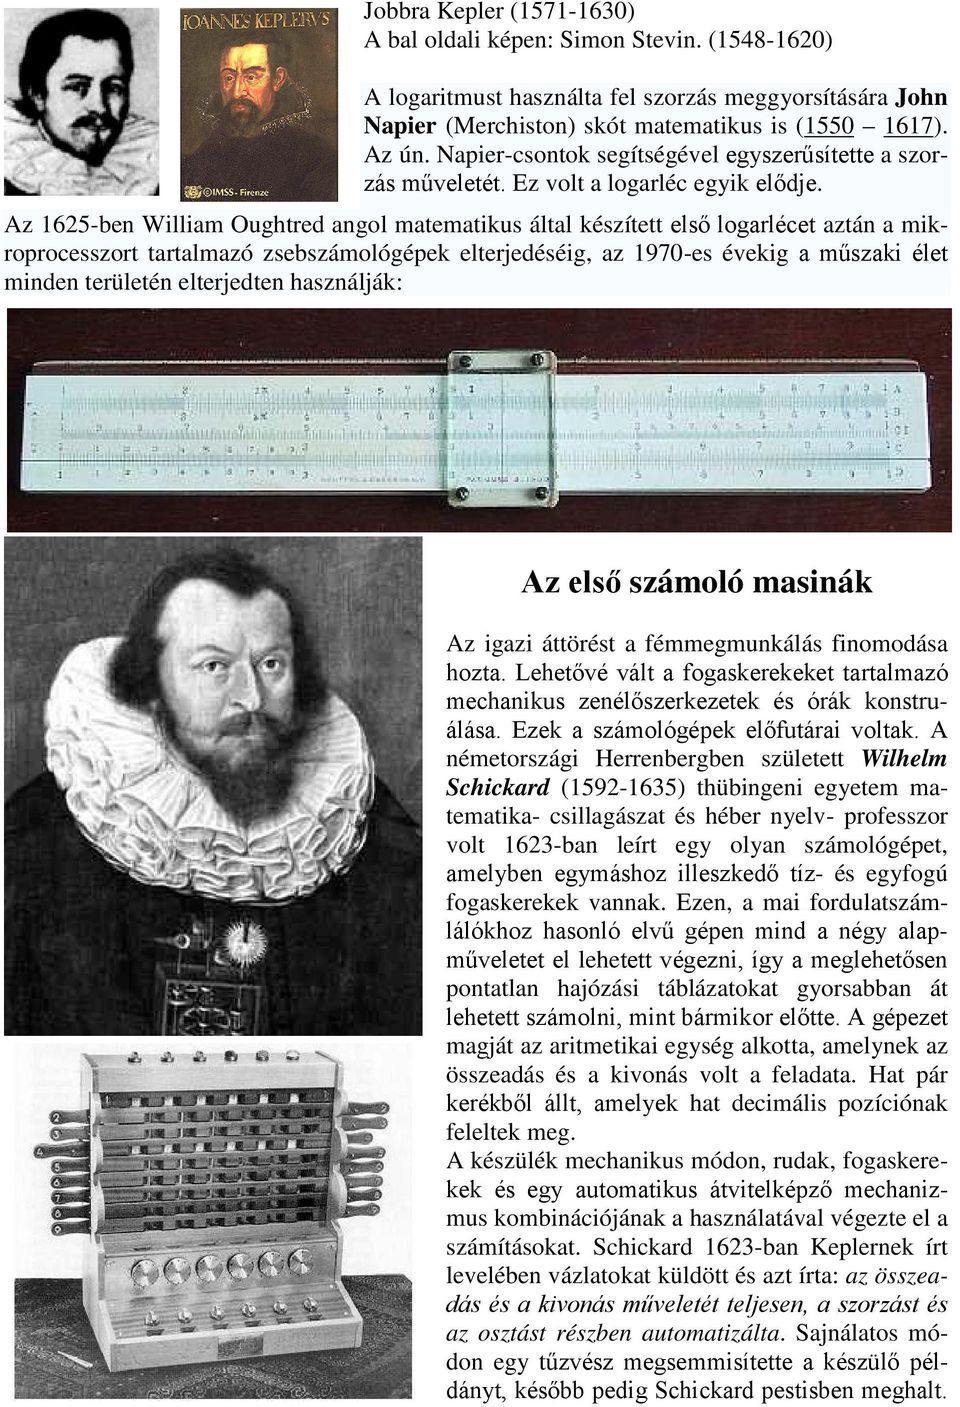 Az 1625-ben William Oughtred angol matematikus által készített első logarlécet aztán a mikroprocesszort tartalmazó zsebszámológépek elterjedéséig, az 1970-es évekig a műszaki élet minden területén